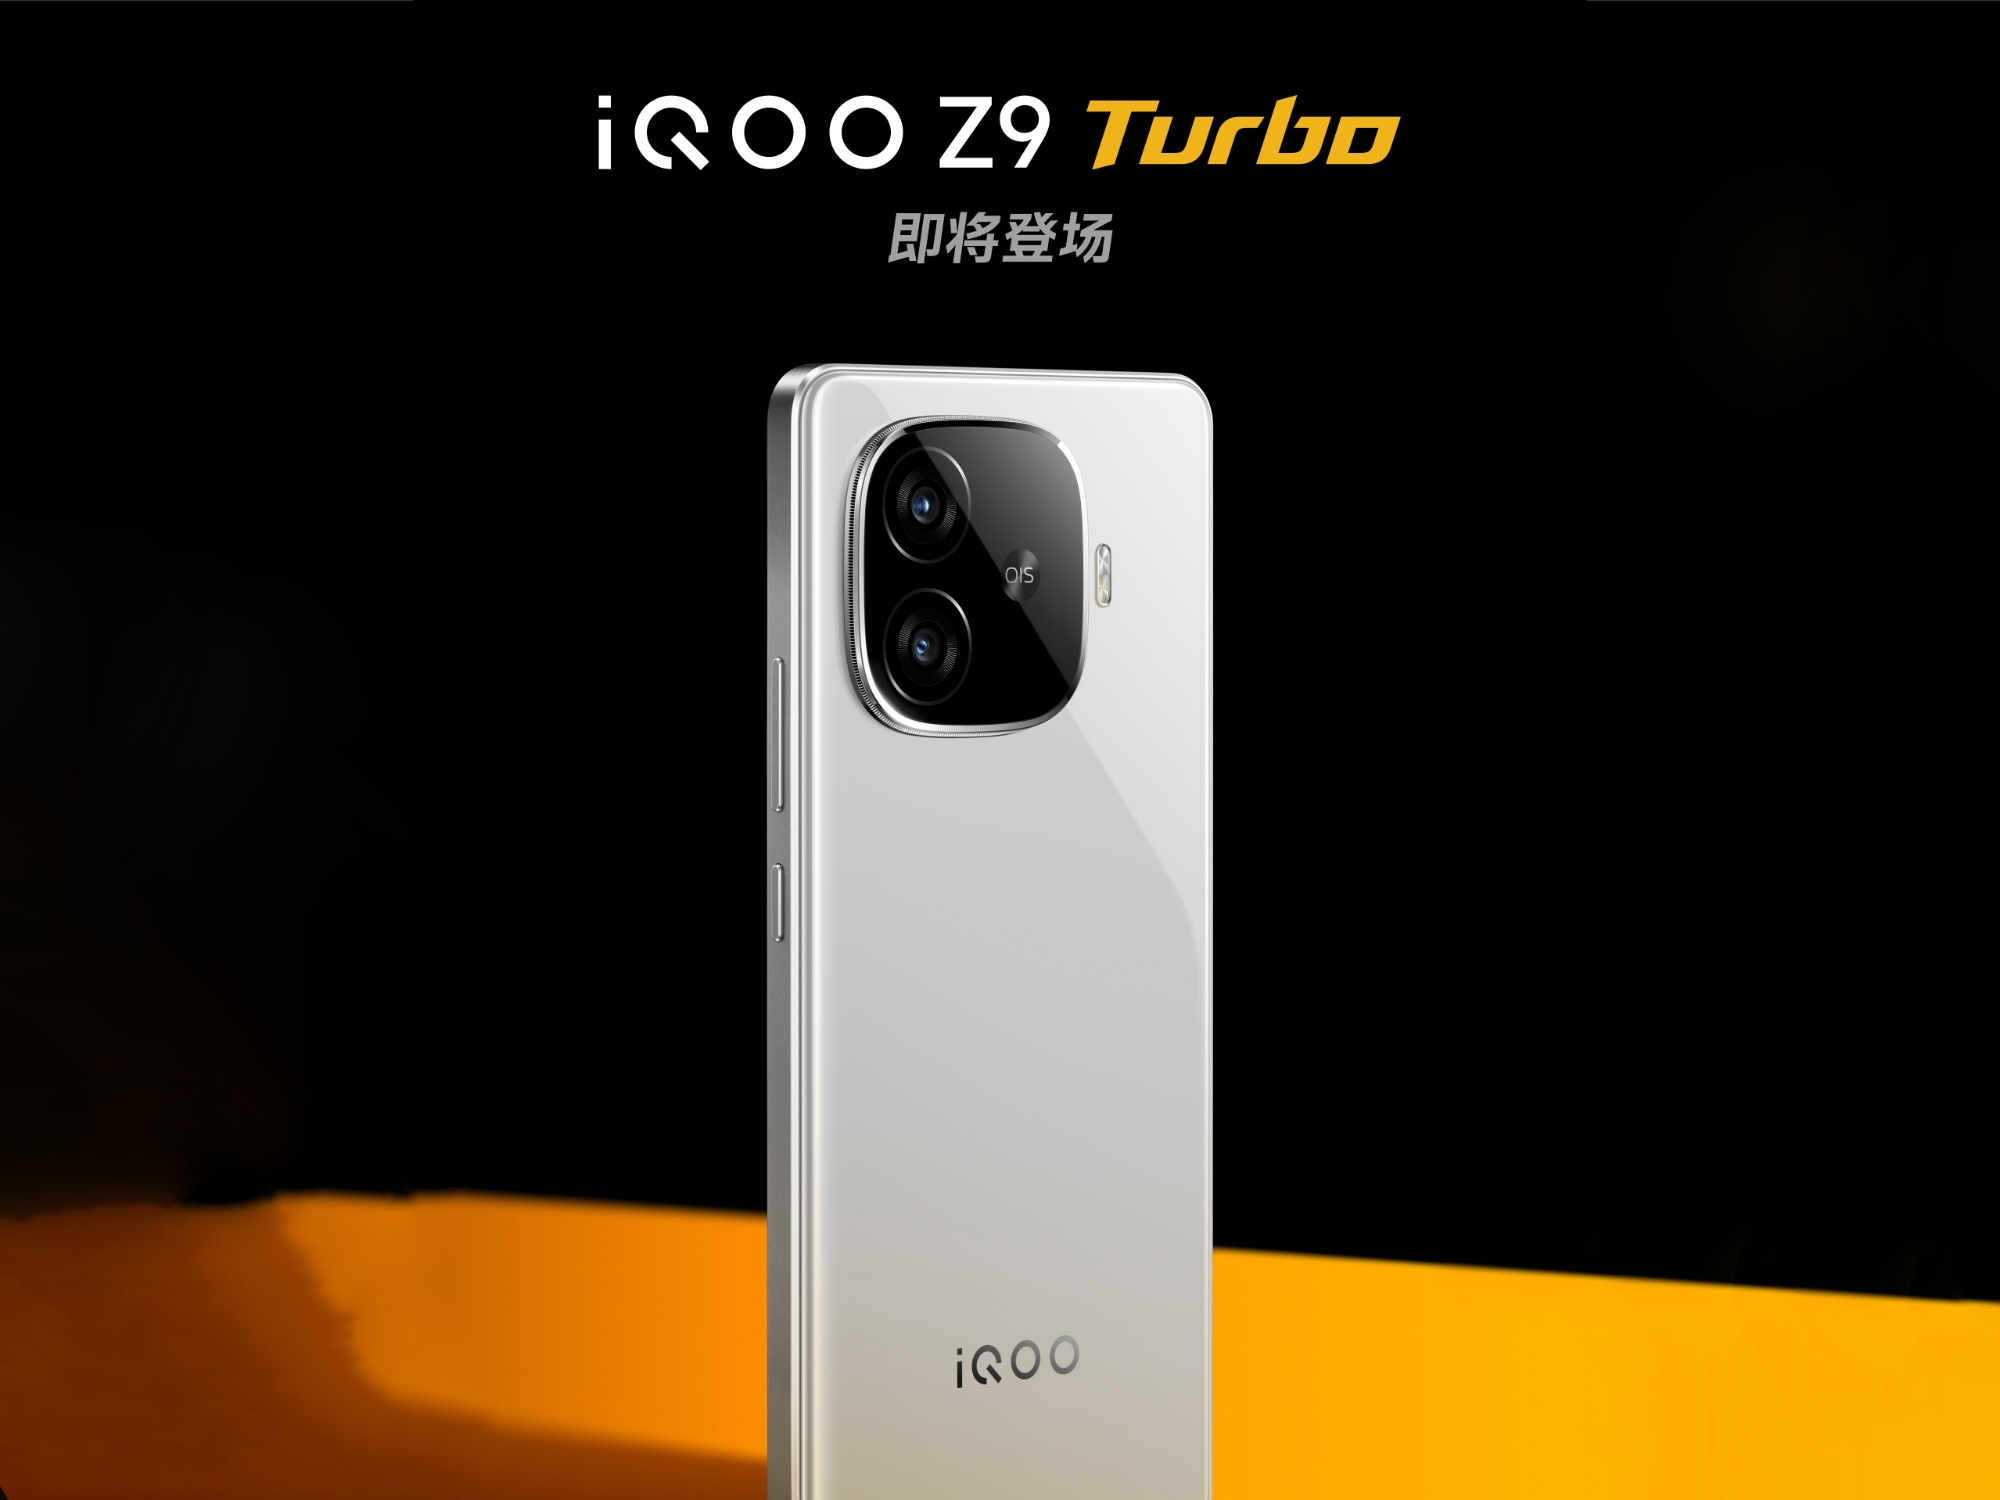 vivo enthüllte das Design des iQOO Z9 Turbo und bestätigte, dass die Neuheit von einem Snapdragon 8s Gen 3 Chip angetrieben werden wird